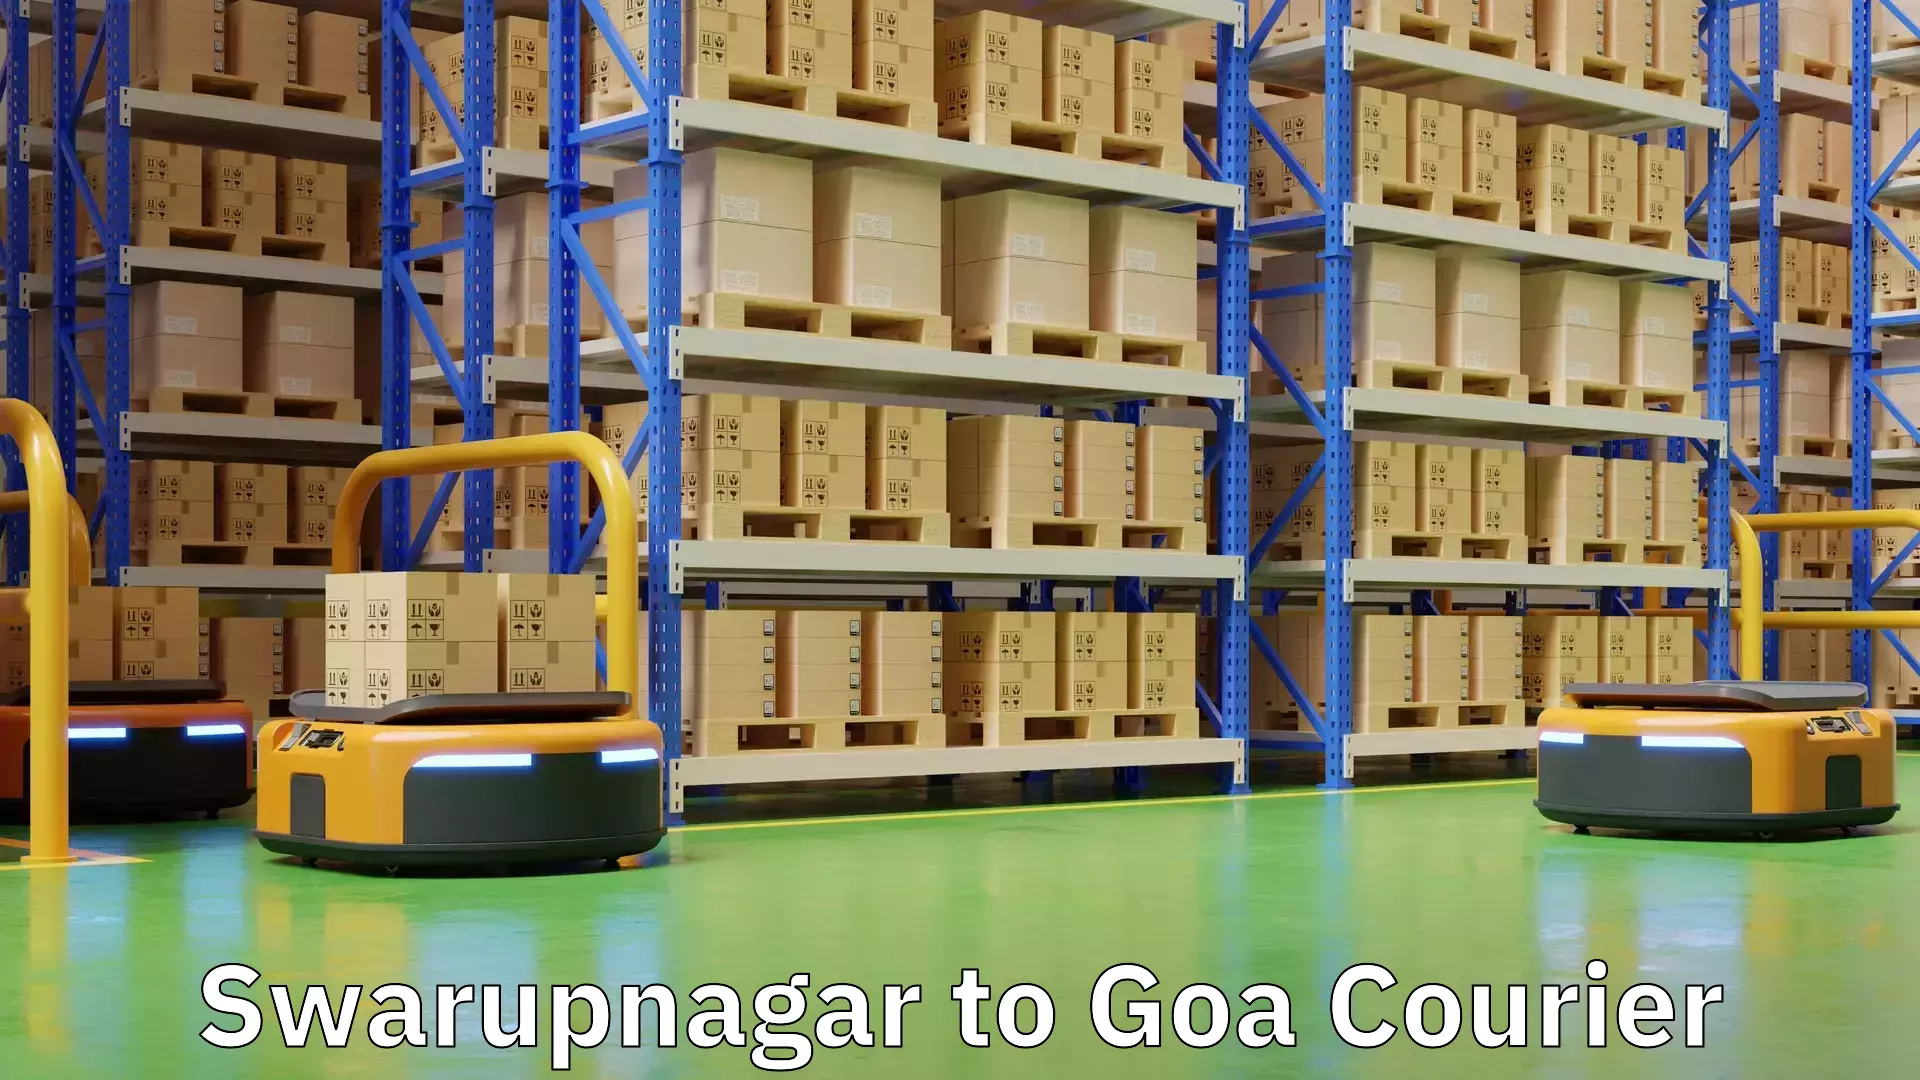 Customer-oriented courier services Swarupnagar to Goa